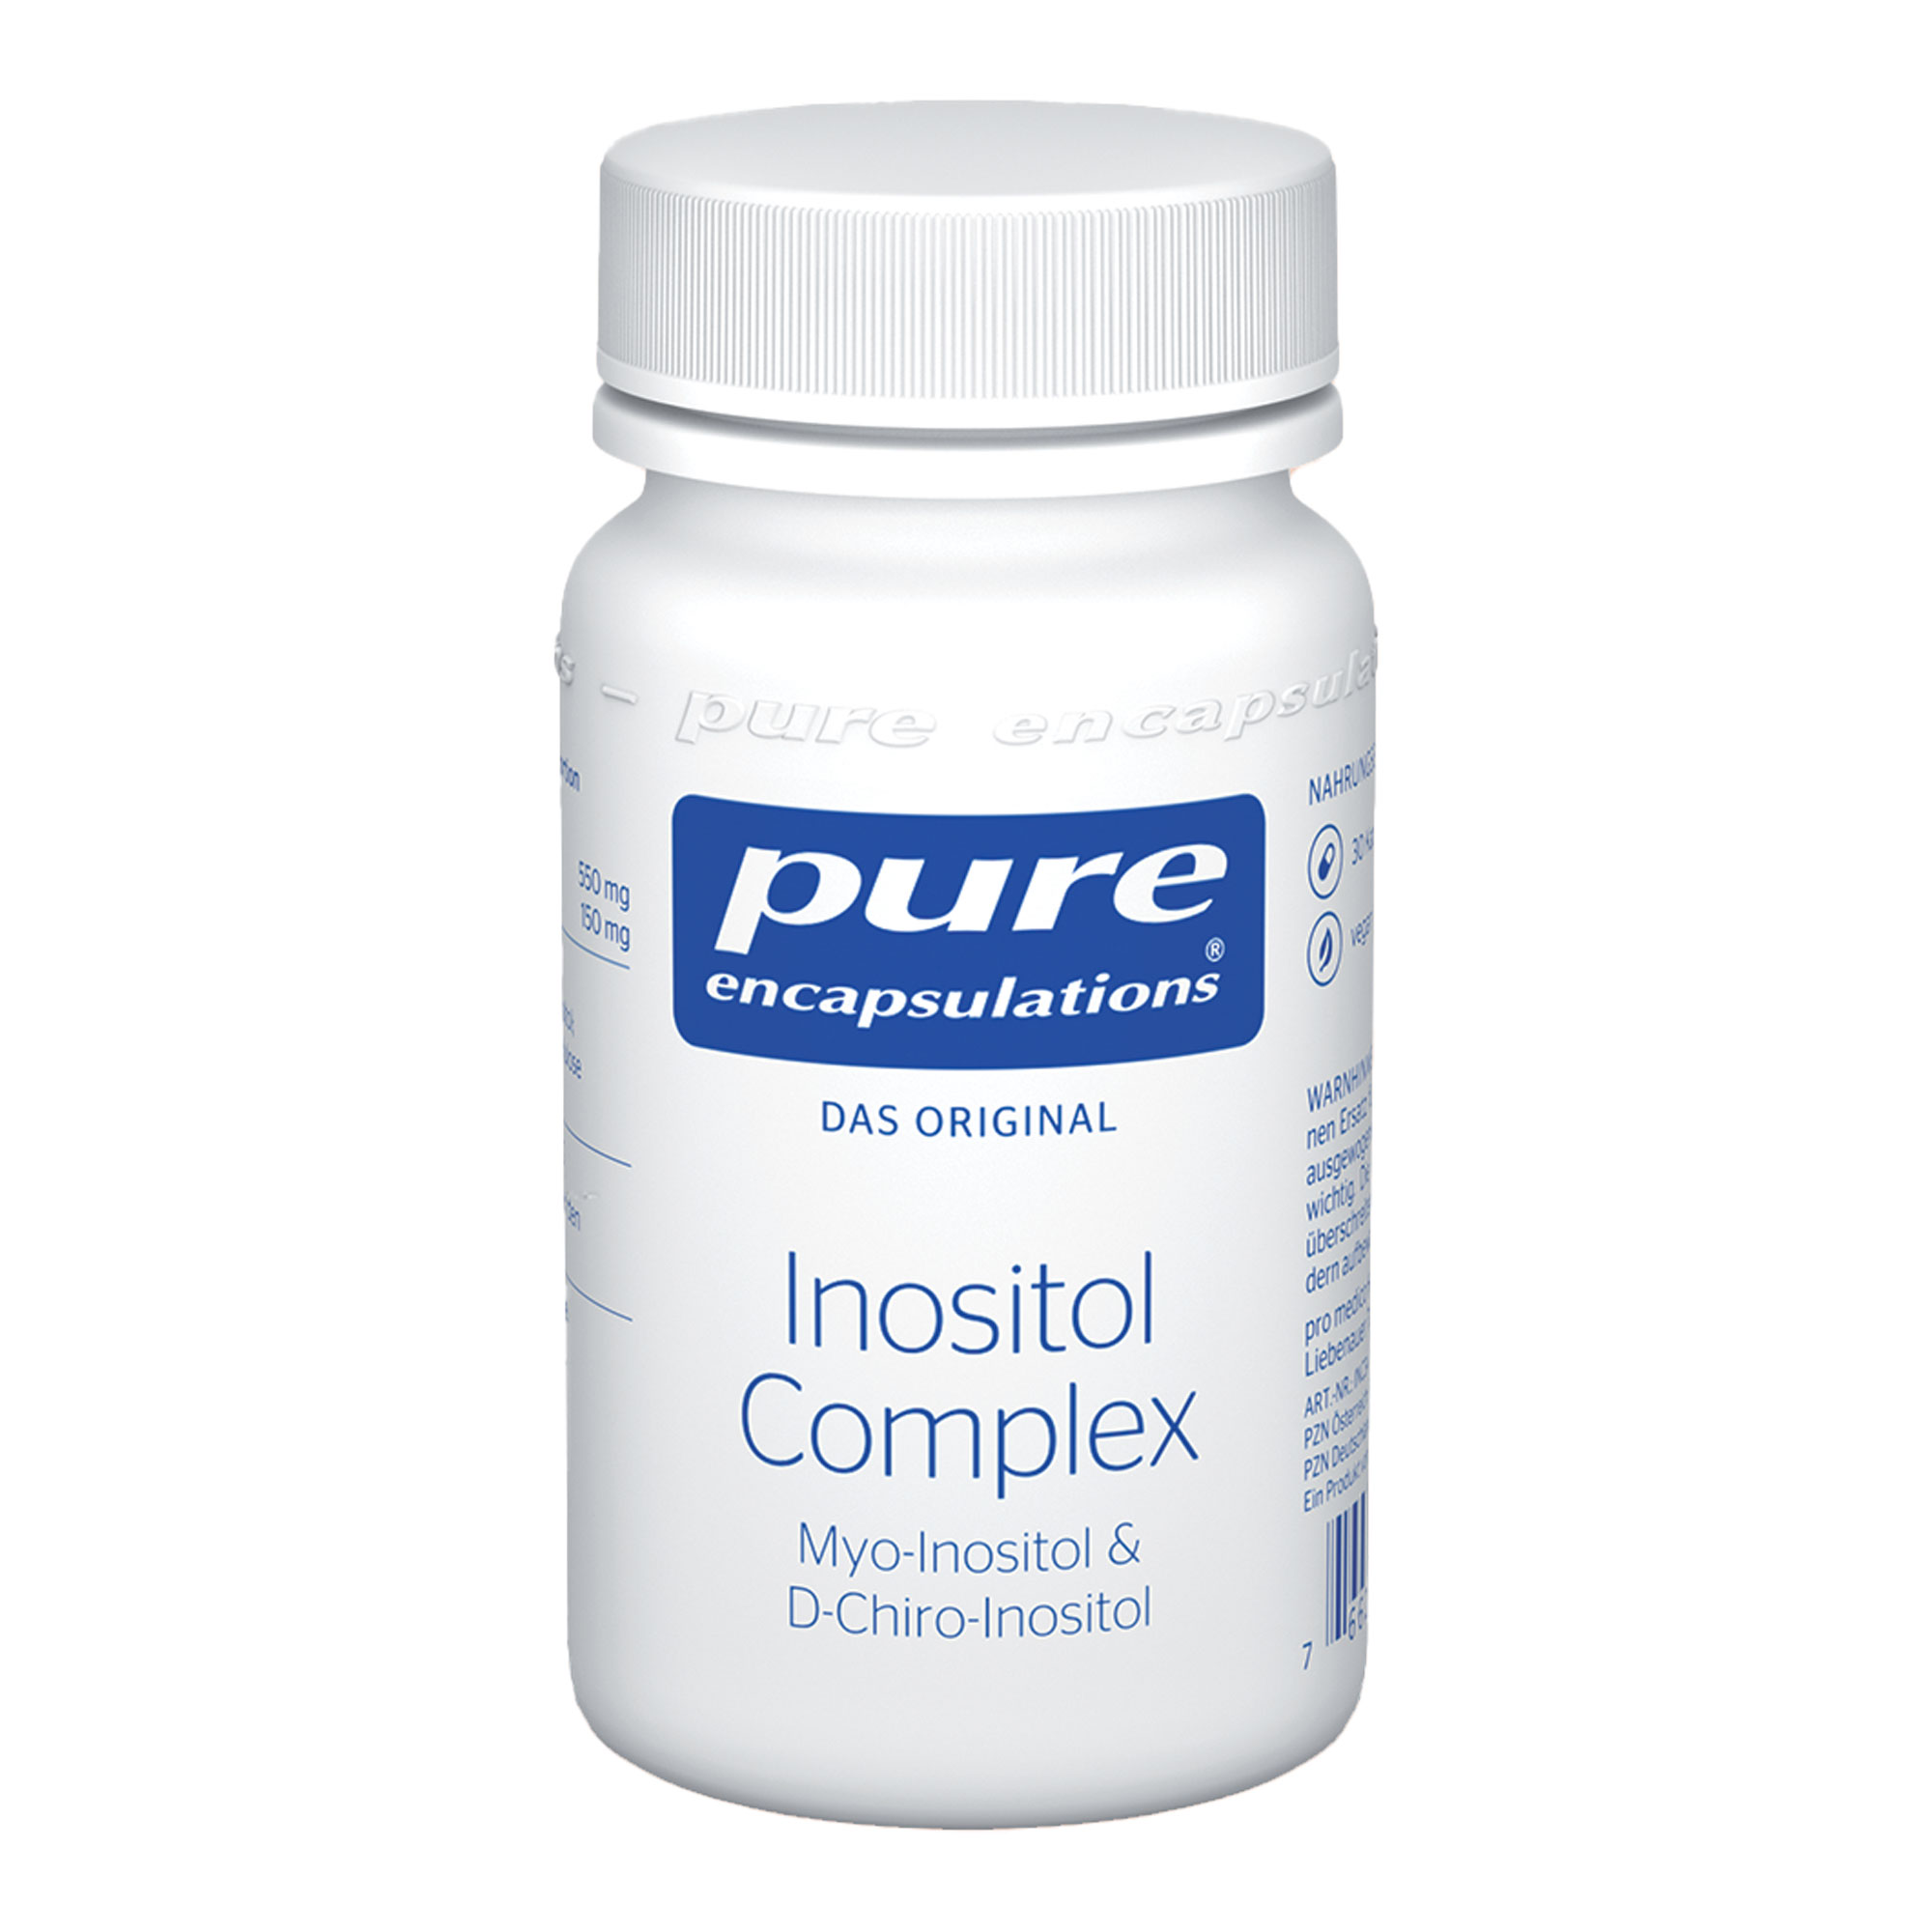 Hochwertige Nahrungsergänzungsmittel, das eine synergistische Mischung aus Inositol, Myo-Inositol und D-Chiro-Inositol enthält.